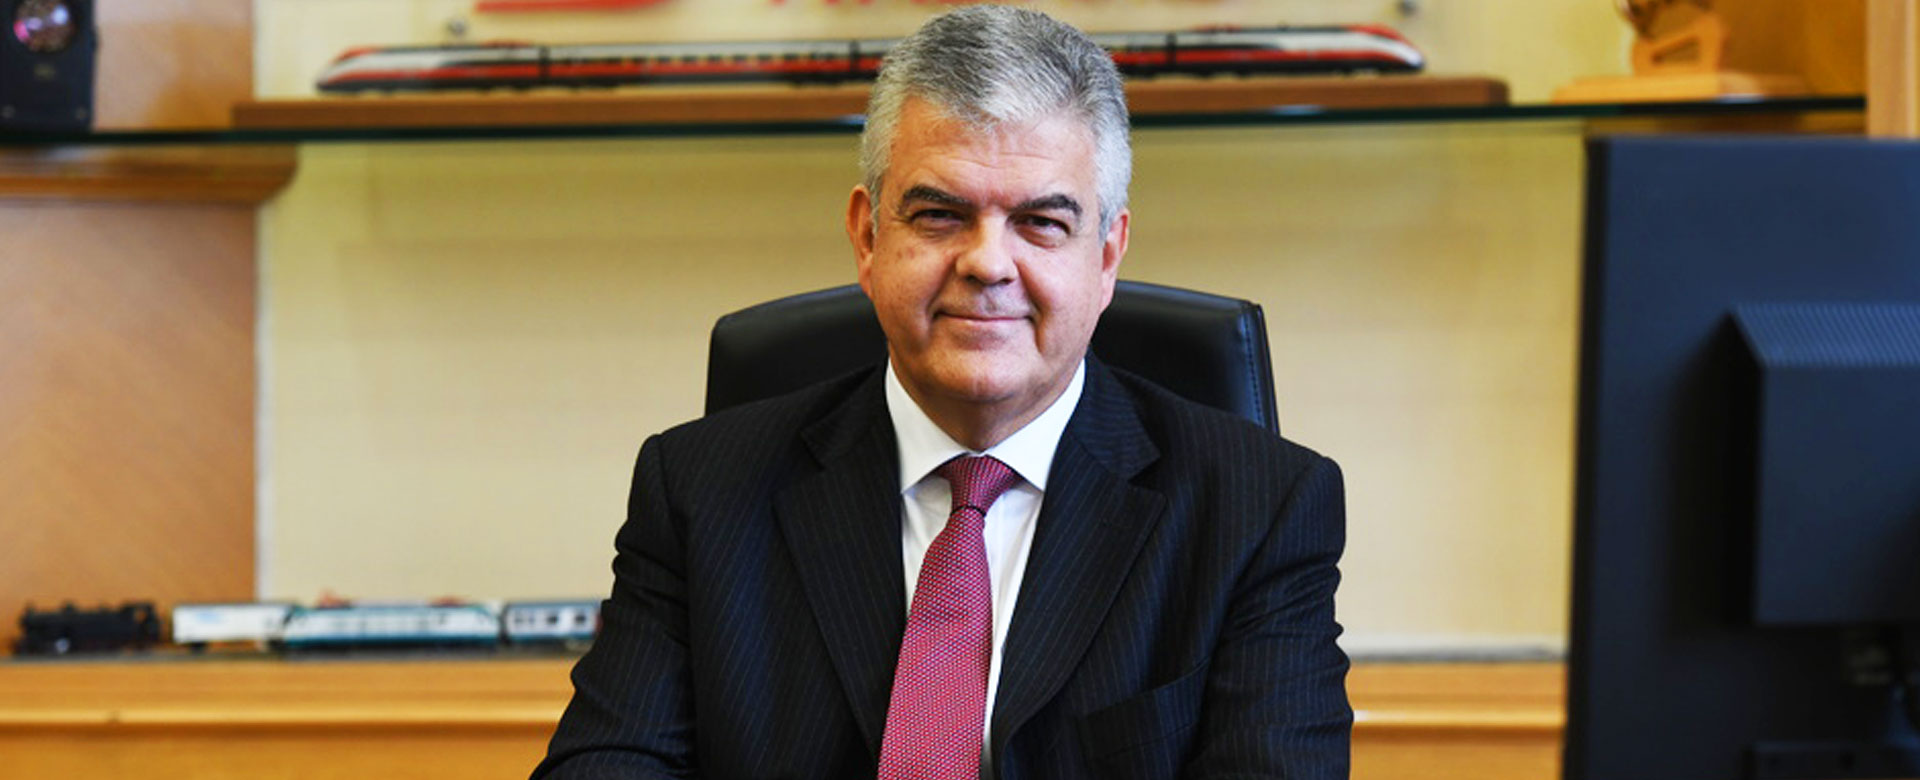 Luigi Ferraris, Amministratore Delegato del Gruppo FS